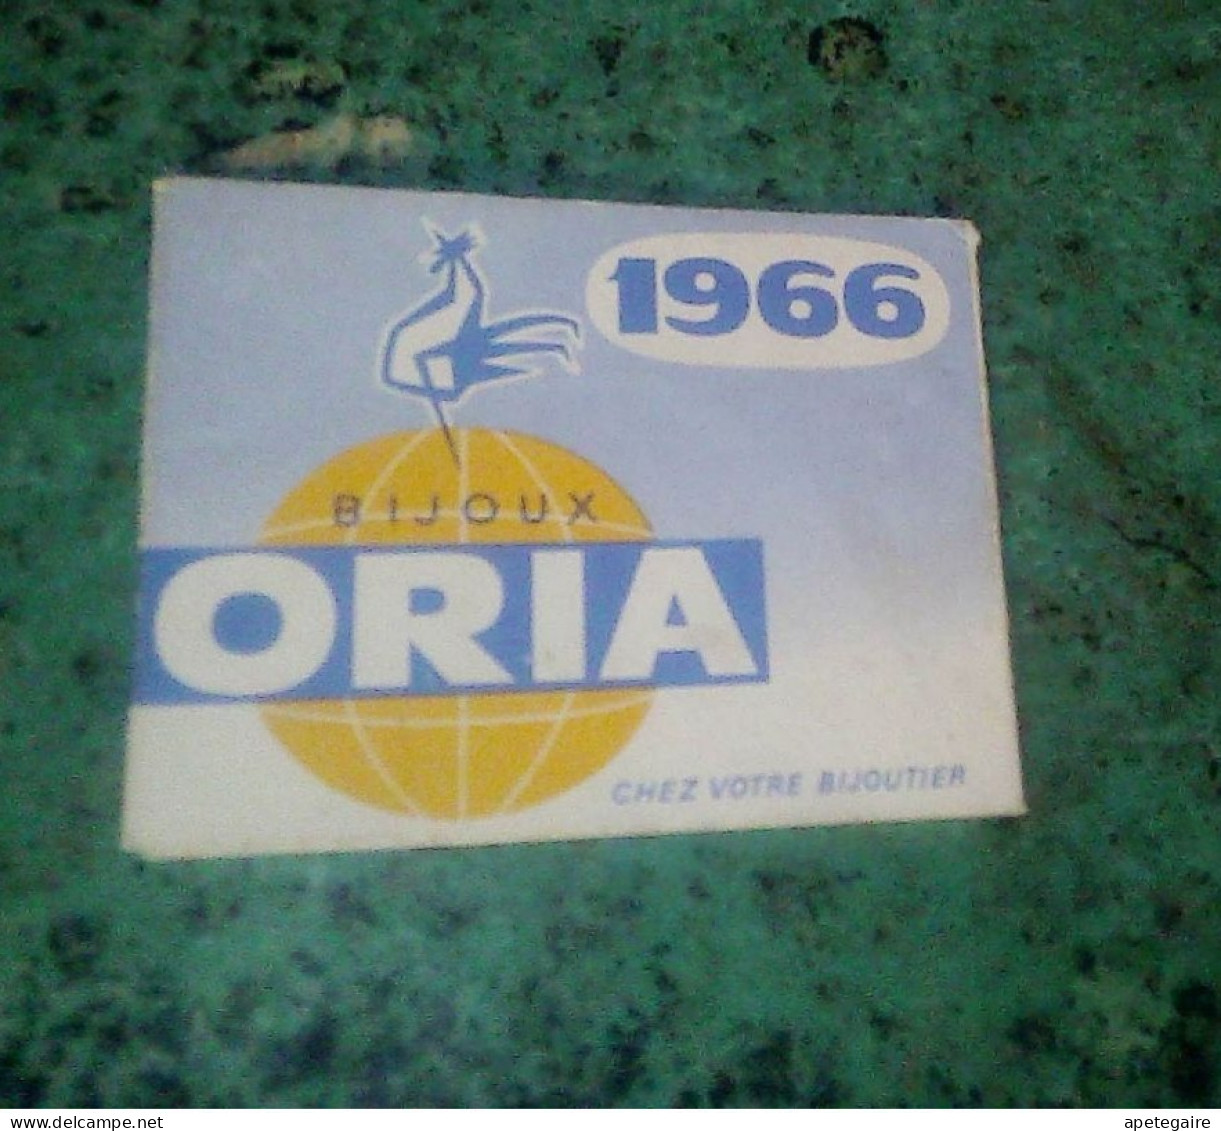 Vieux Papier Calendrier De Poche Bijoux Oria Année 1966 - Grossformat : 1961-70